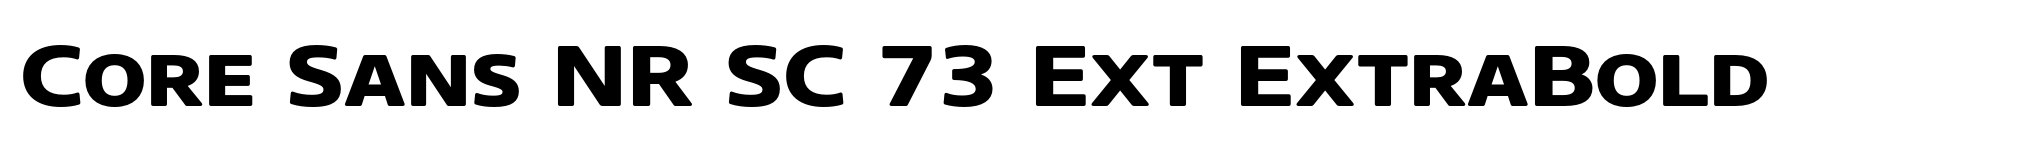 Core Sans NR SC 73 Ext ExtraBold image